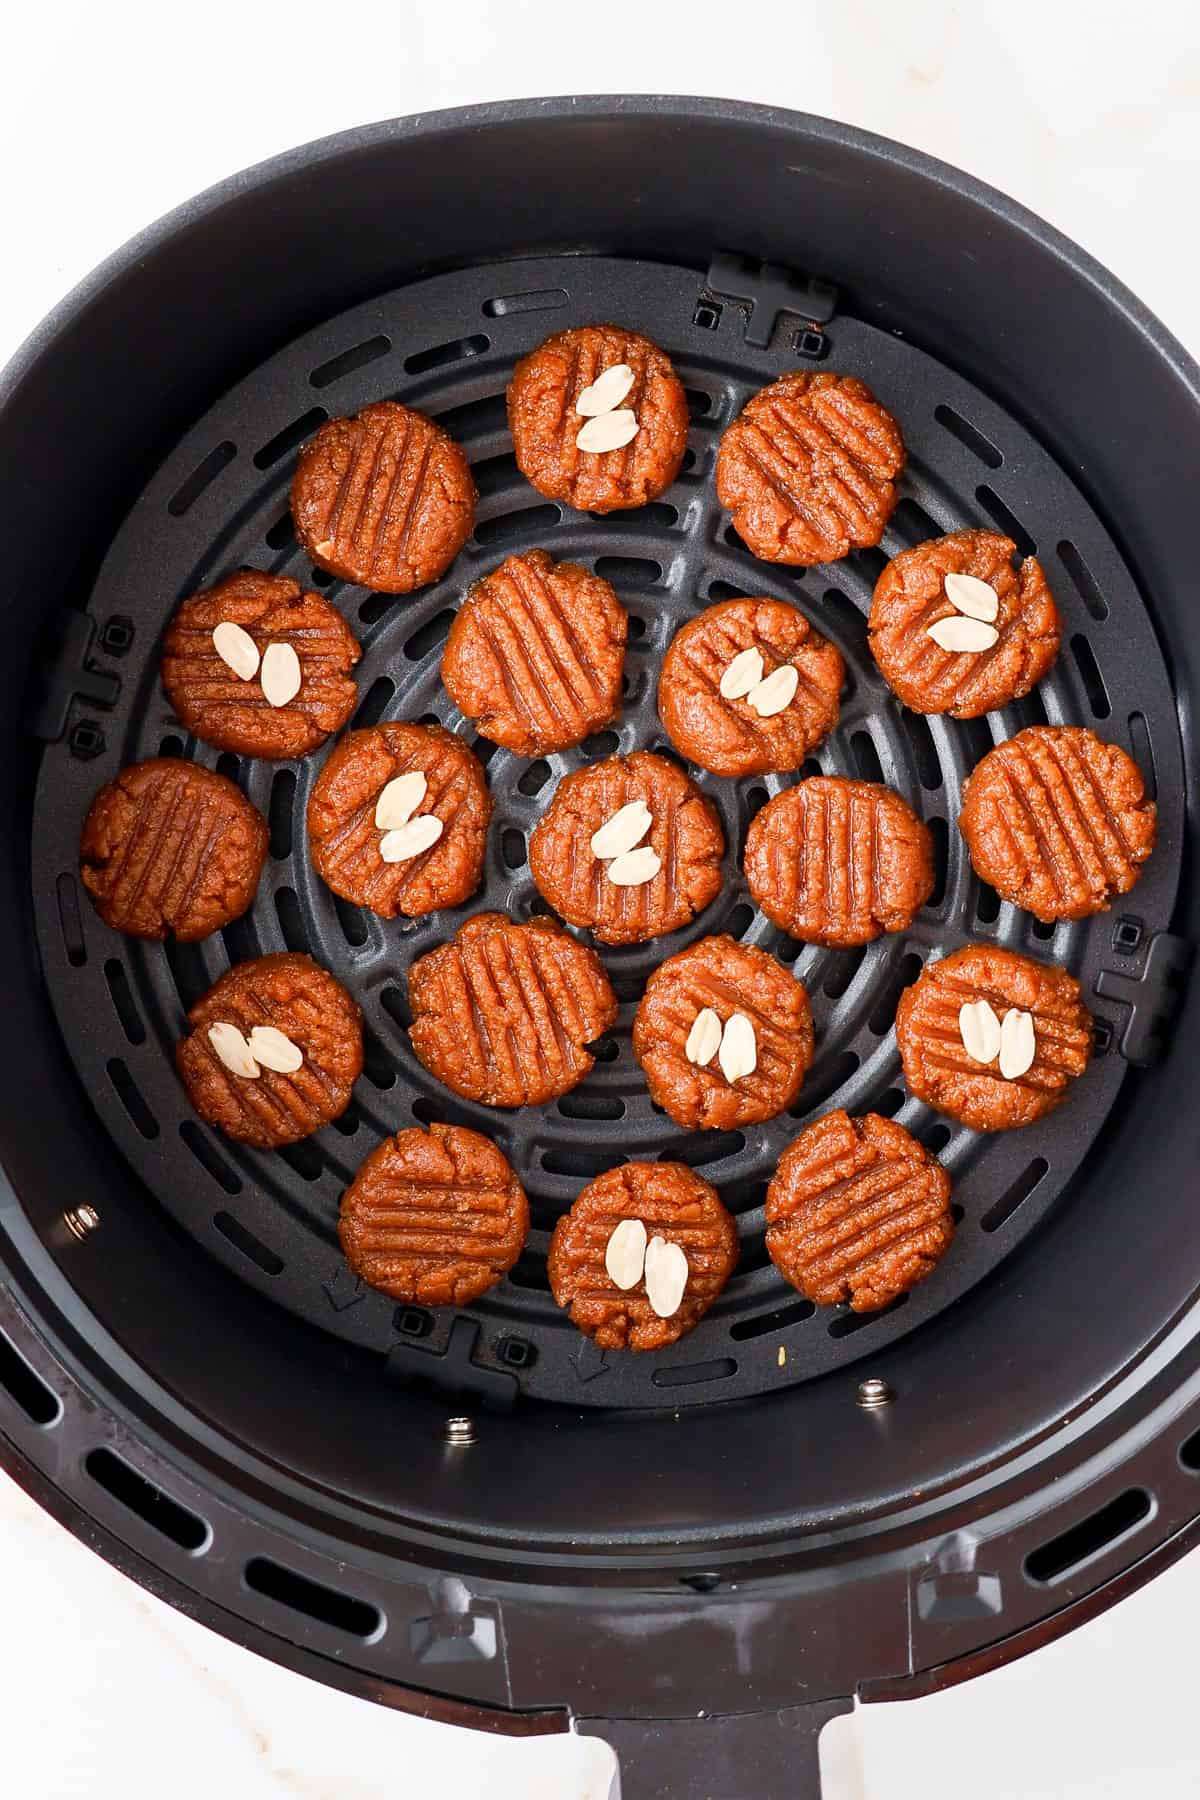 Raw cookies in air fryer basket.